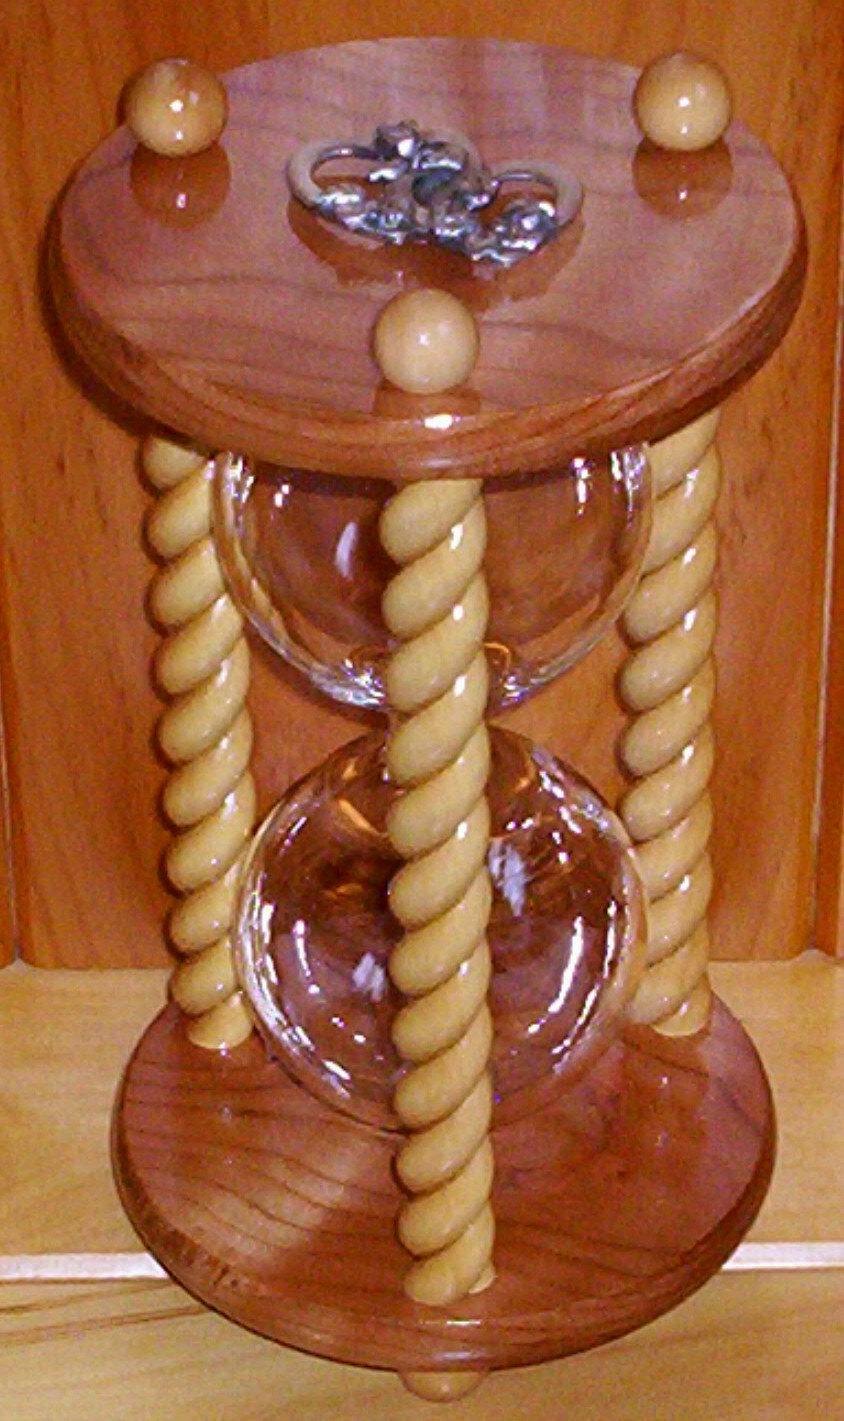 زفاف - Unity Hourglass - The Honeymoon Cherry and Maple Wedding Unity Sand Ceremony Hourglass by Heirloom Hourglass - The Original Unity Hourglass